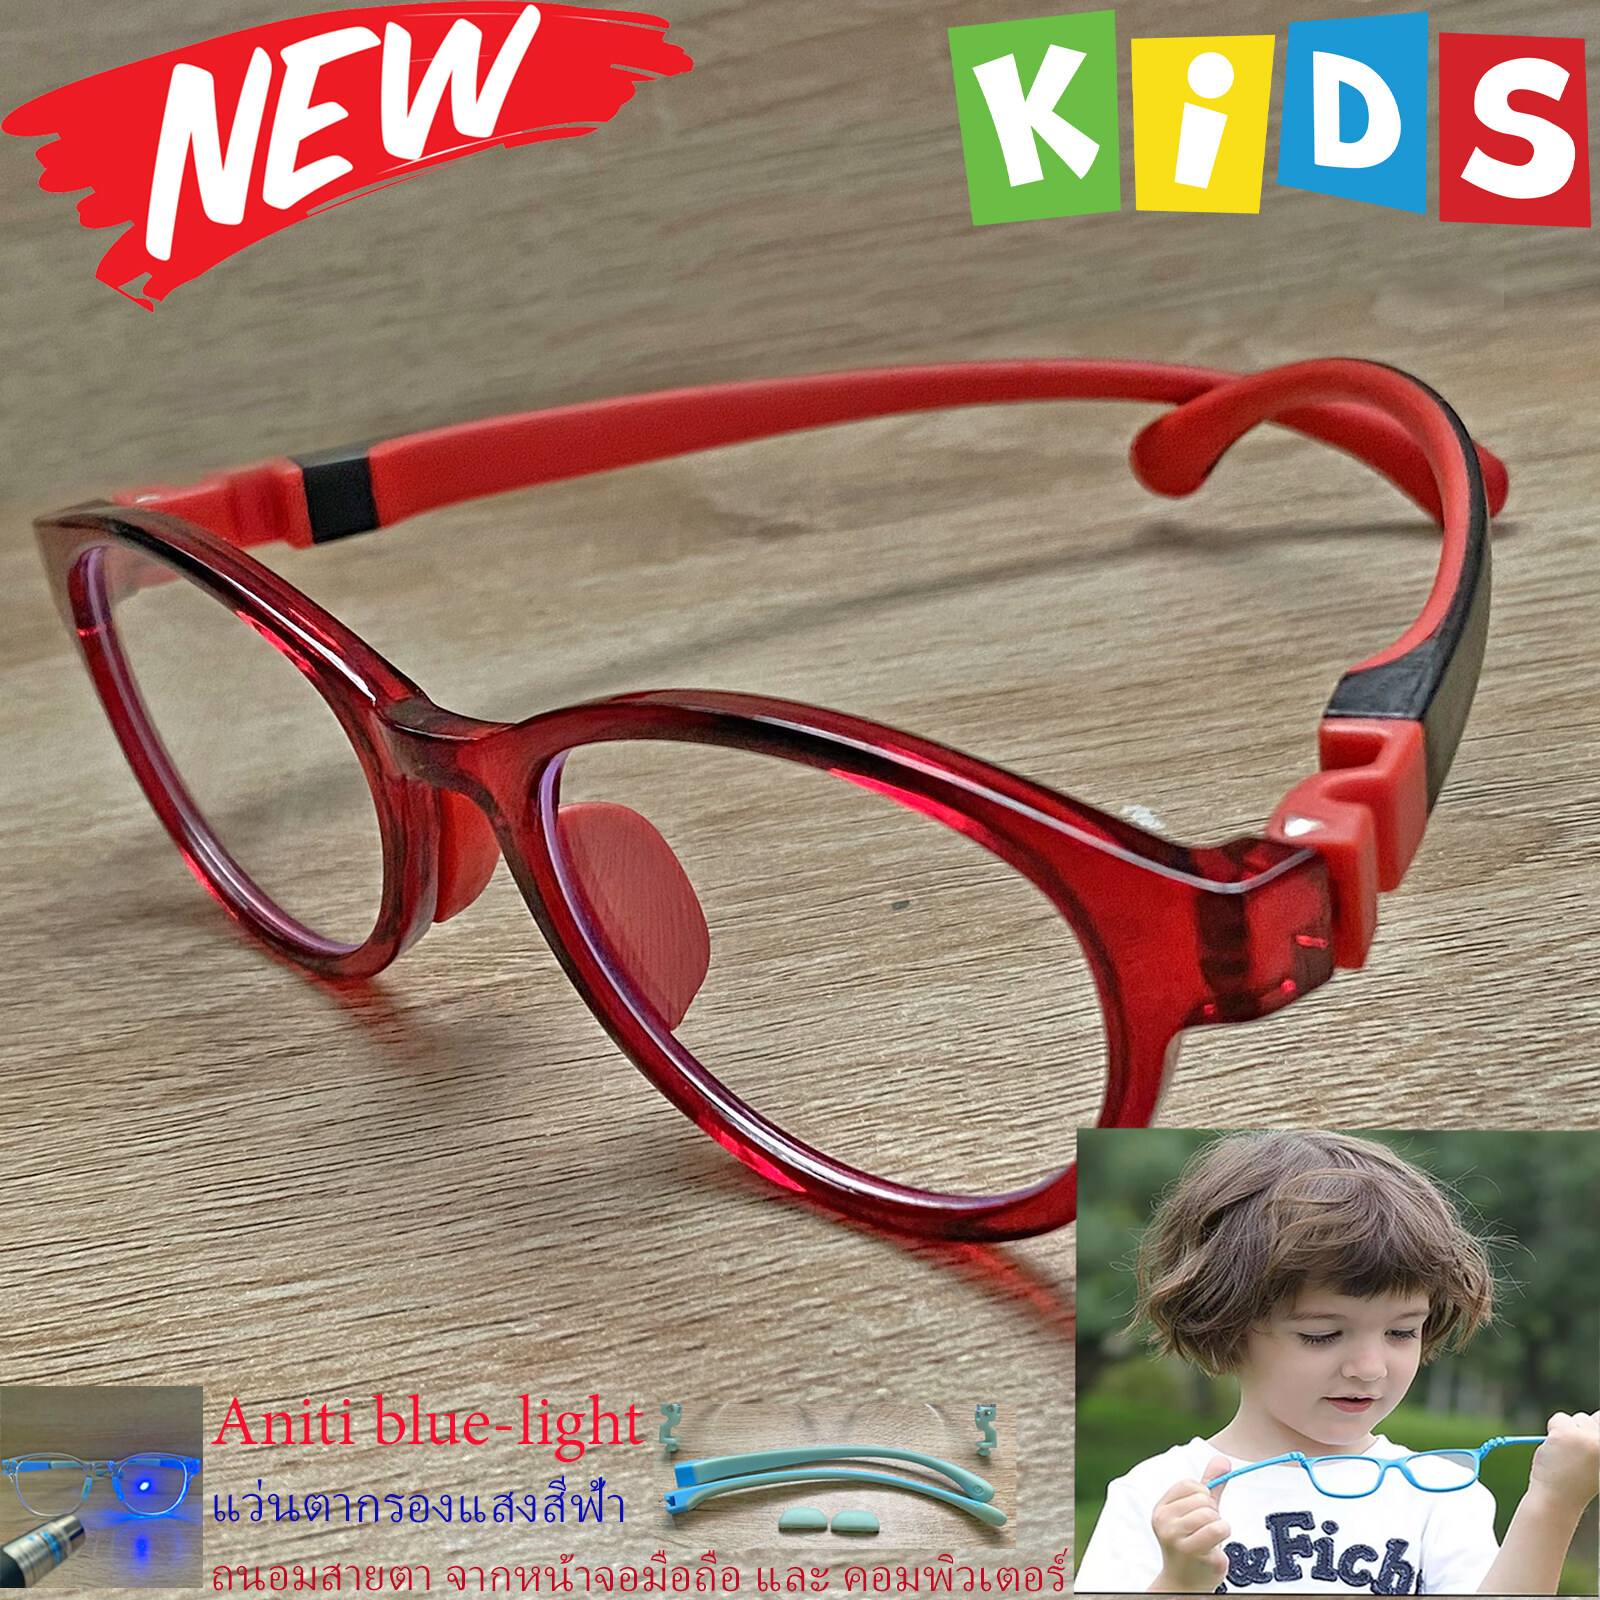 กรอบแว่นตาเด็ก กรองแสง สีฟ้า blue block แว่นเด็ก บลูบล็อค รุ่น 05 สีแดง ขาข้อต่อยืดหยุ่น ถอดขาเปลี่ยนได้ วัสดุTR90 เหมาะสำหรับเลนส์สายตา